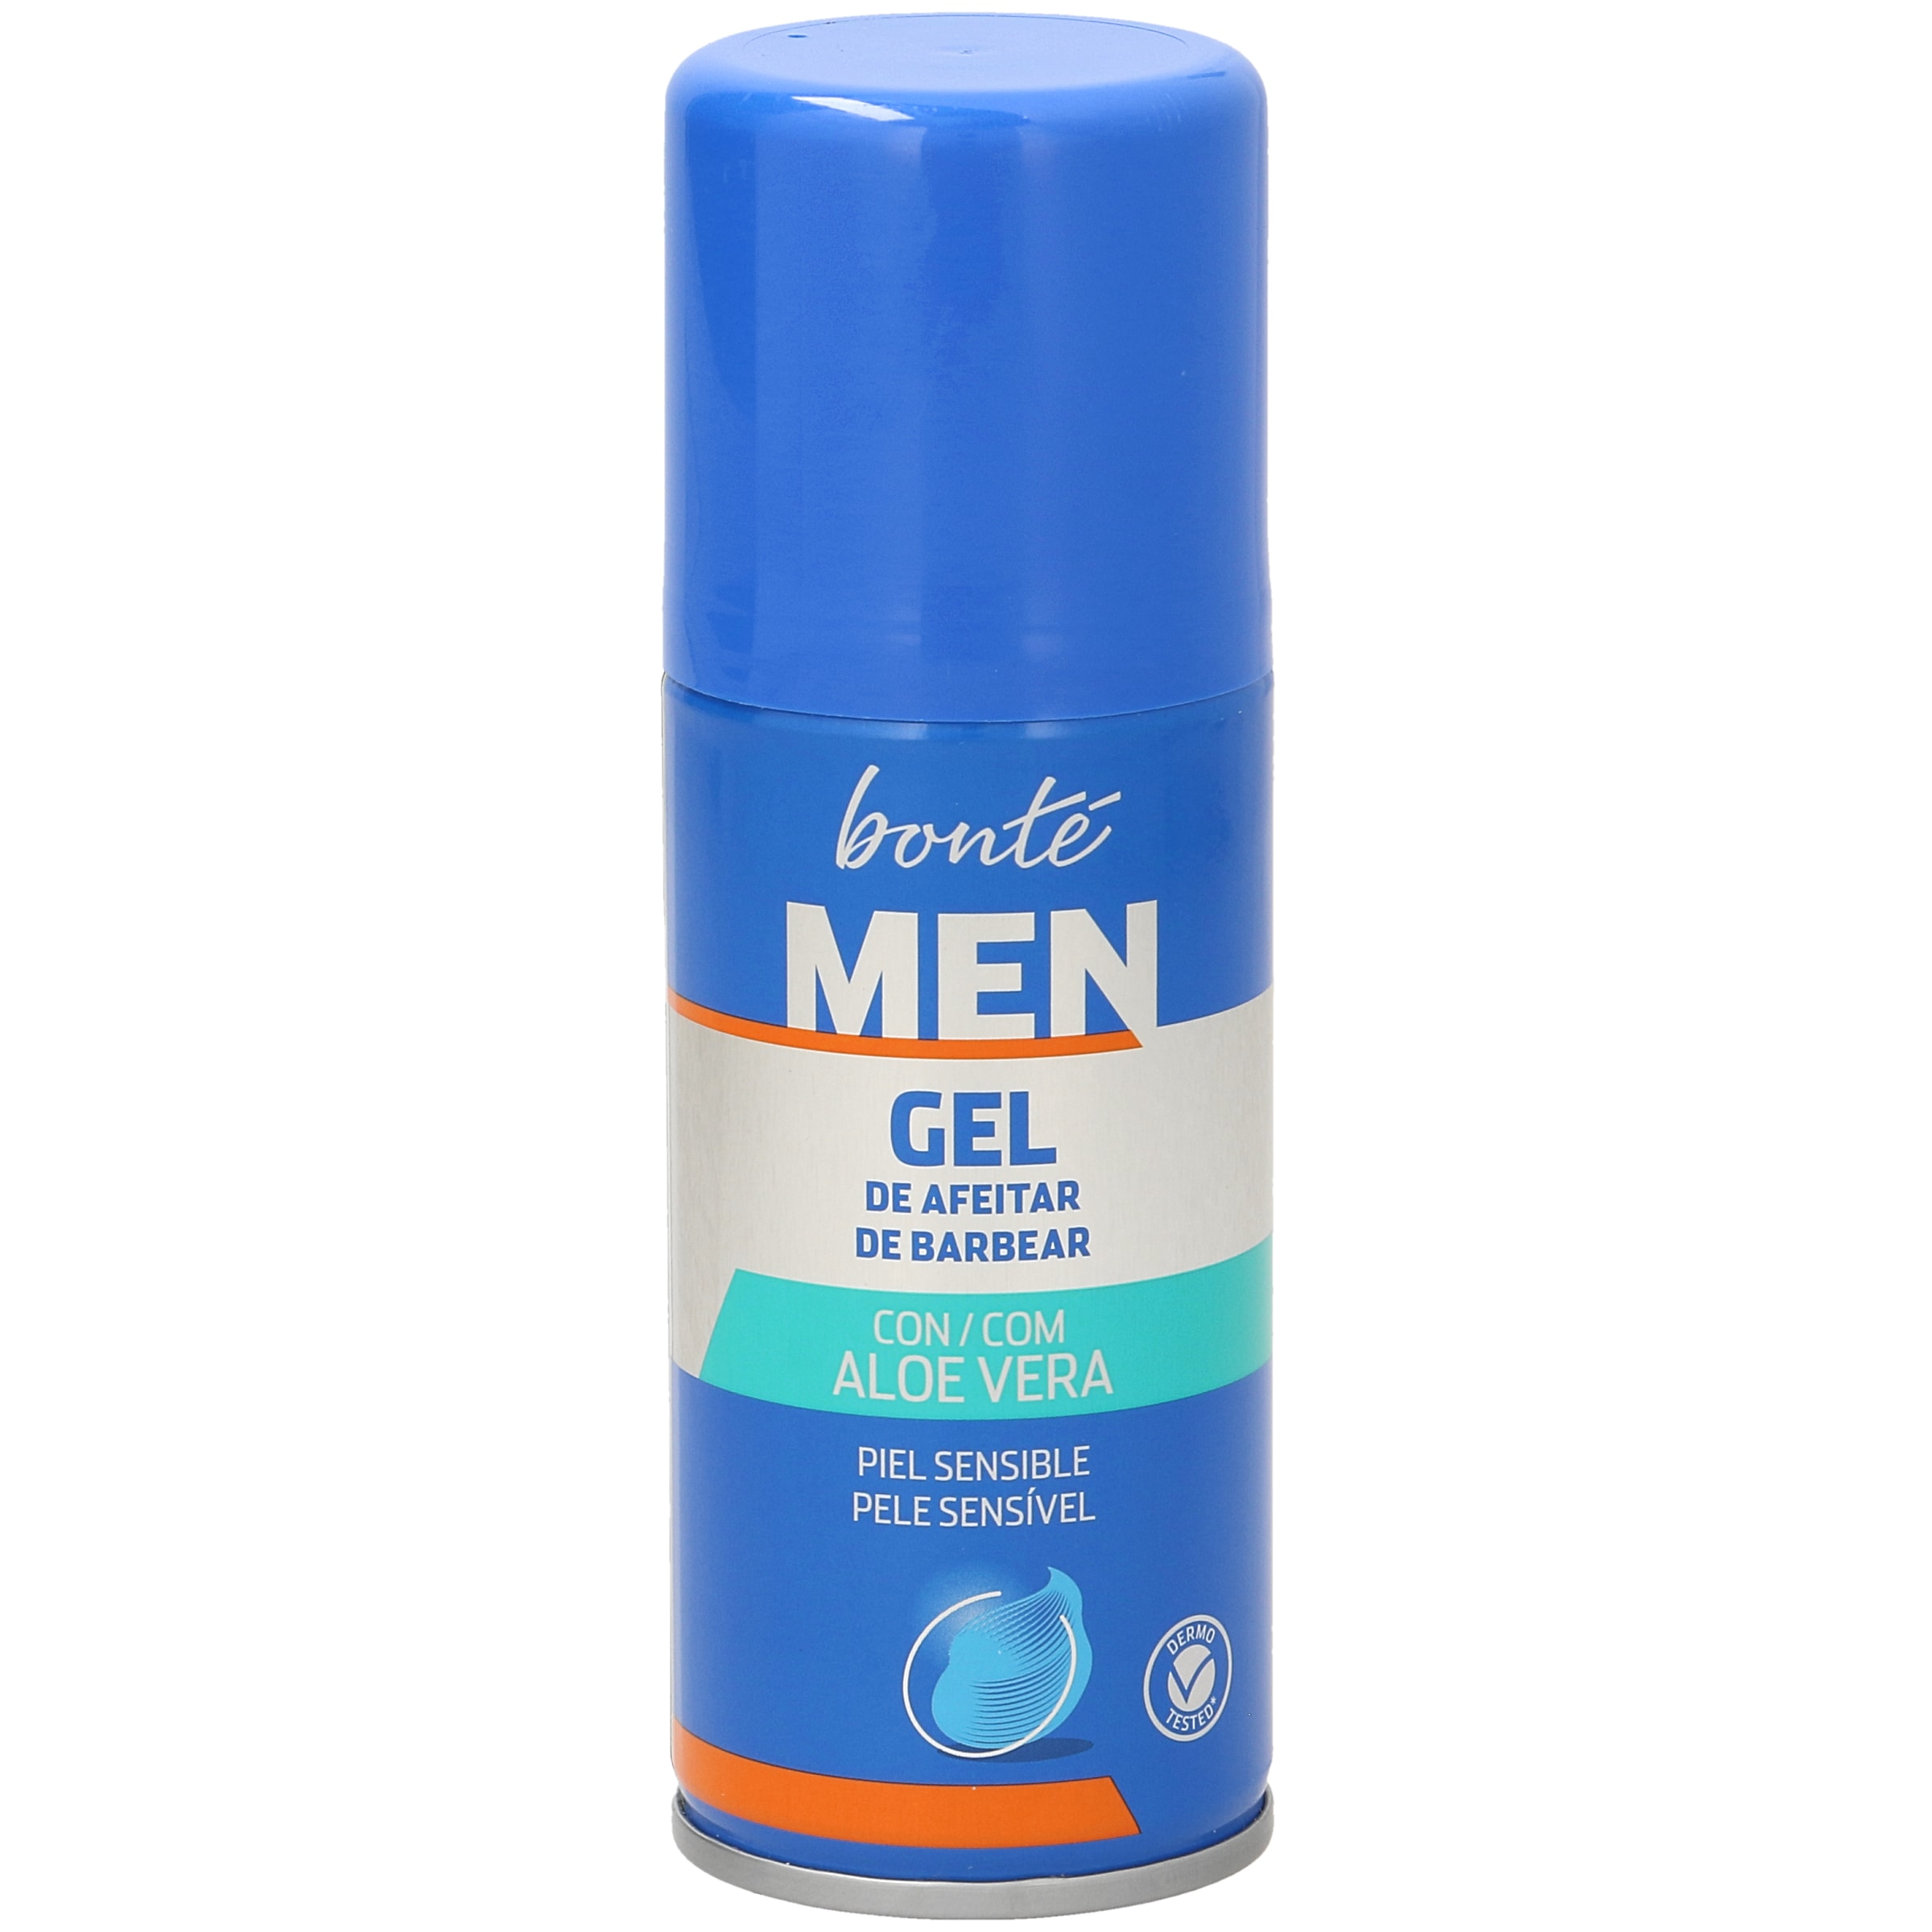 BONTE gel de afeitar piel sensible formato viaje spray 75 ml |  preciosdelsuper.es